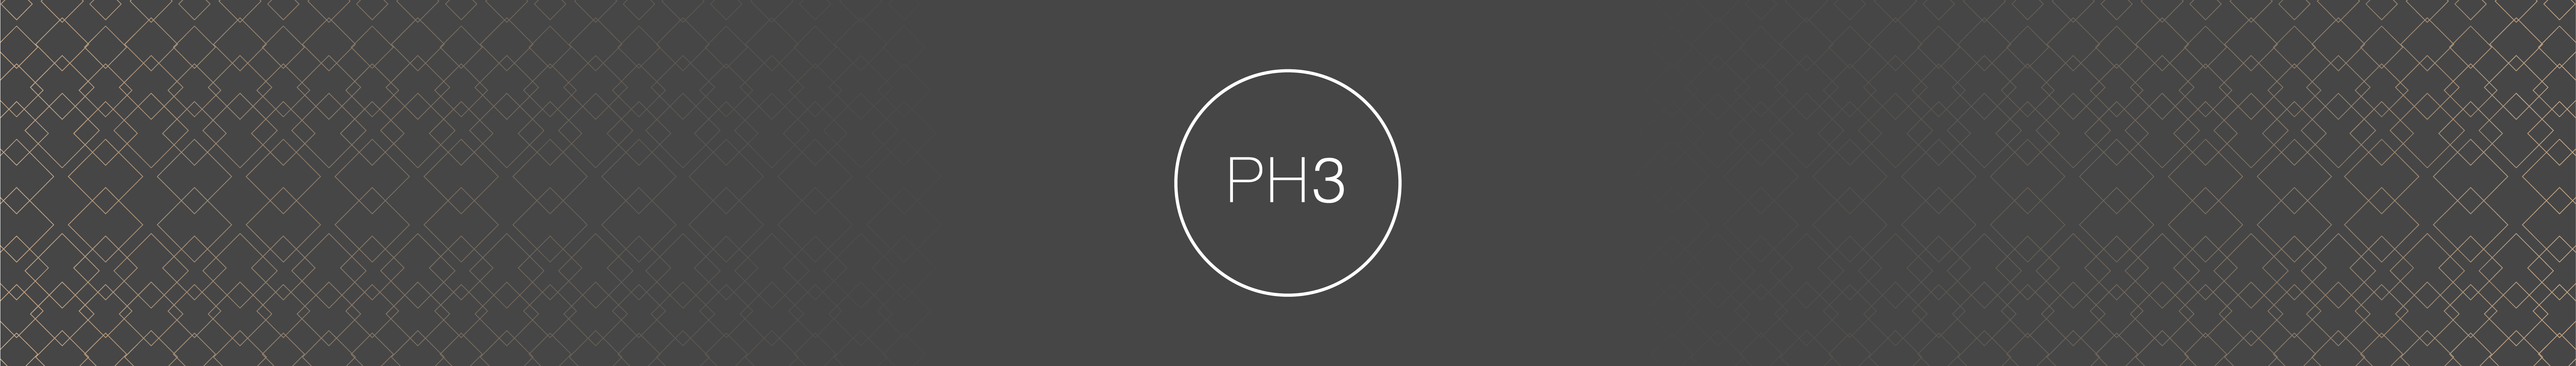 PH3 Member Registration